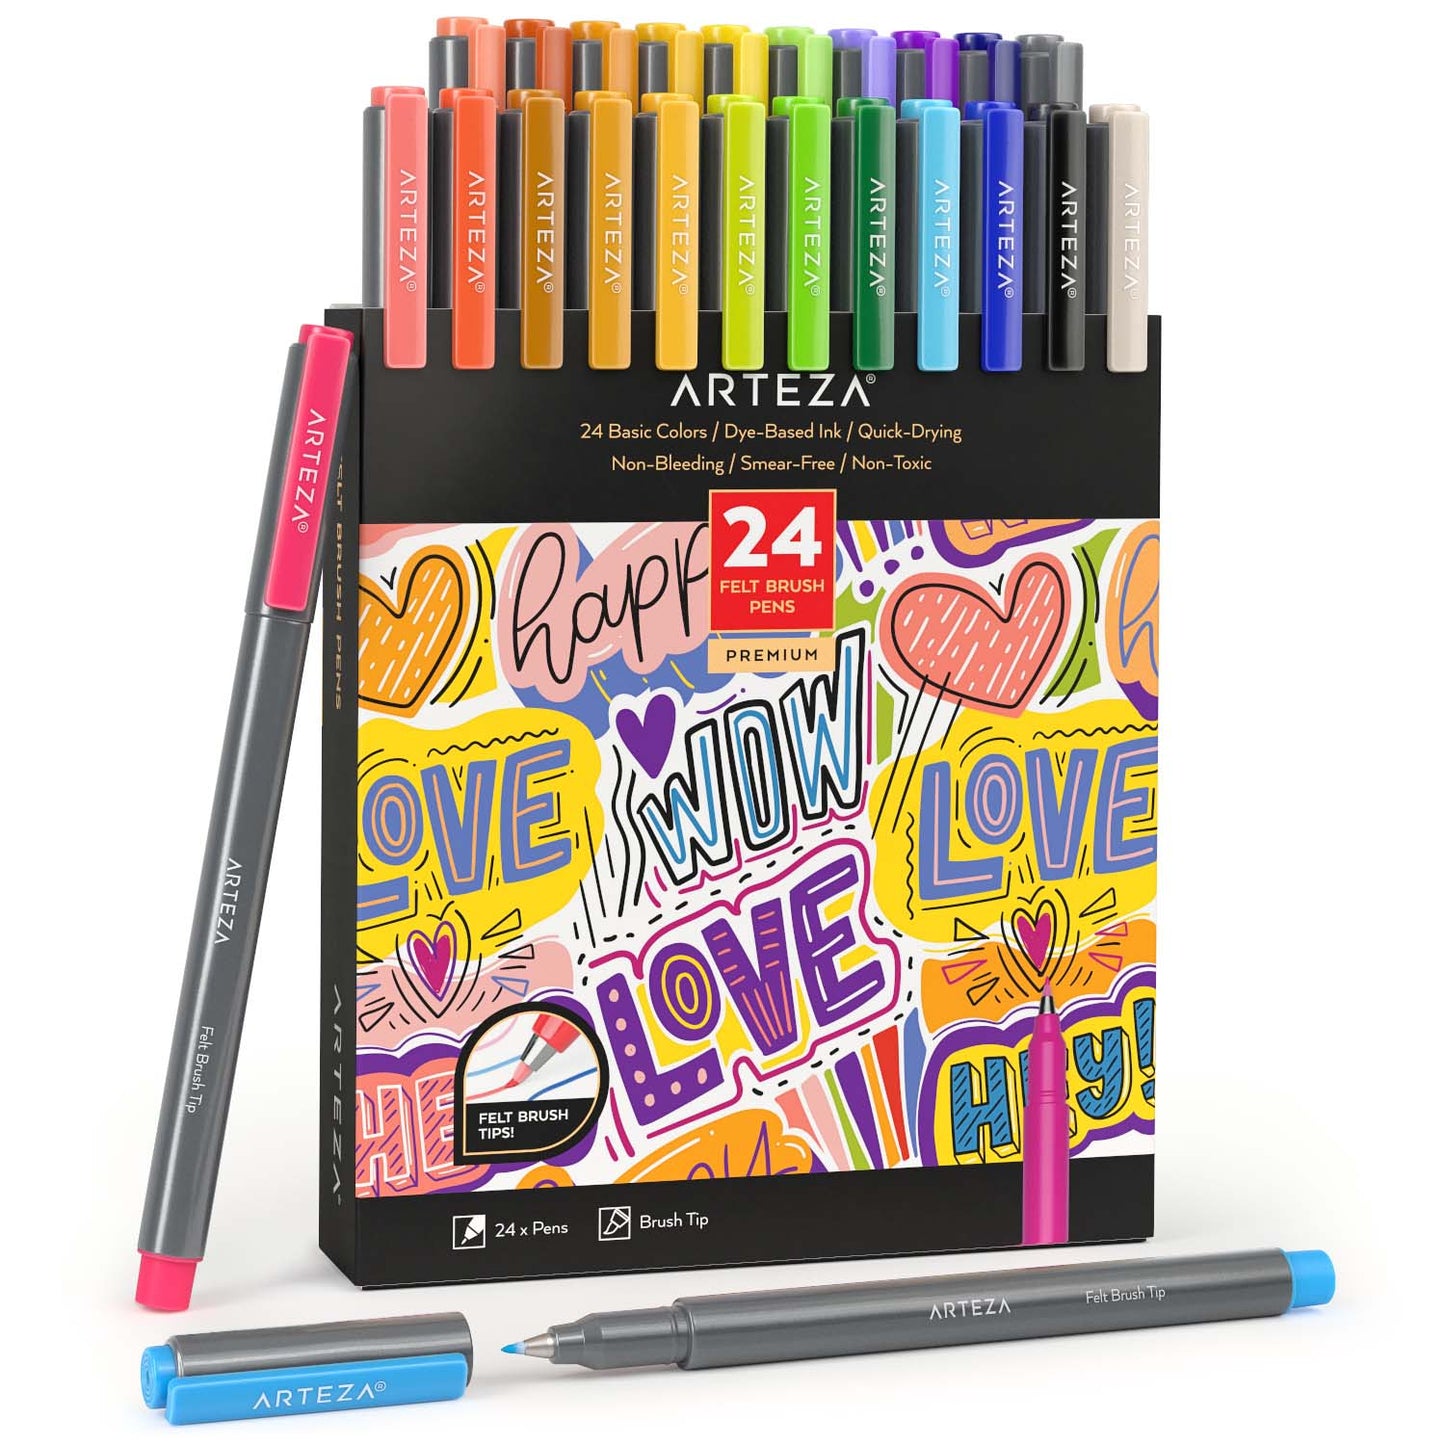 Basics Felt Tip Marker Pens - Assorted Color 12-Pack